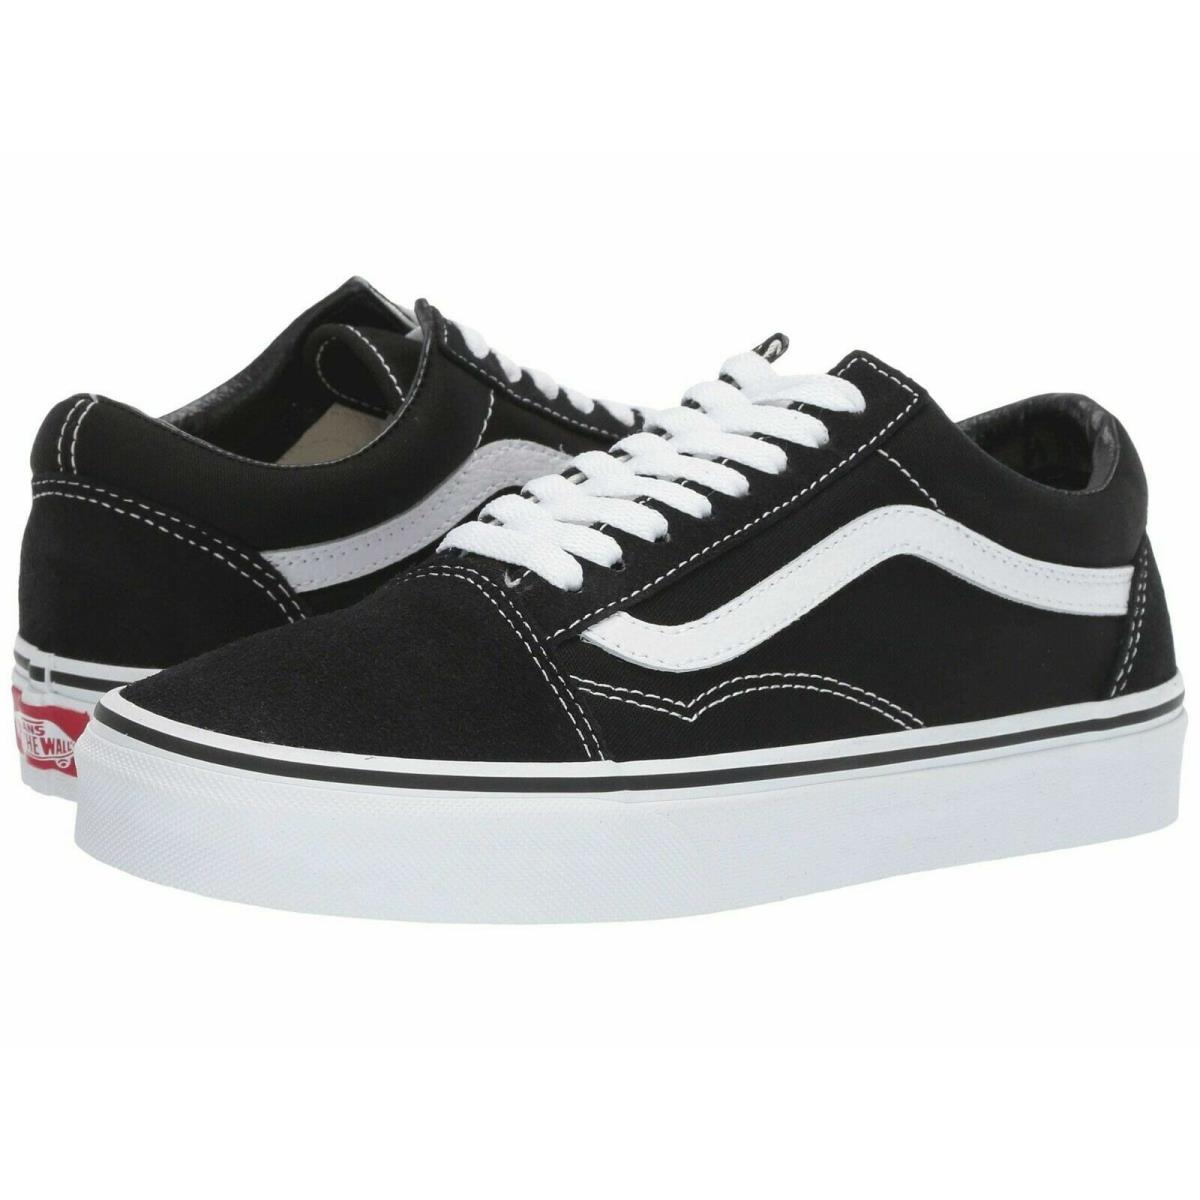 Vans Old Skool Skateboard Classic Black White Mens Womens Sneakers Tennis Shoes - Black